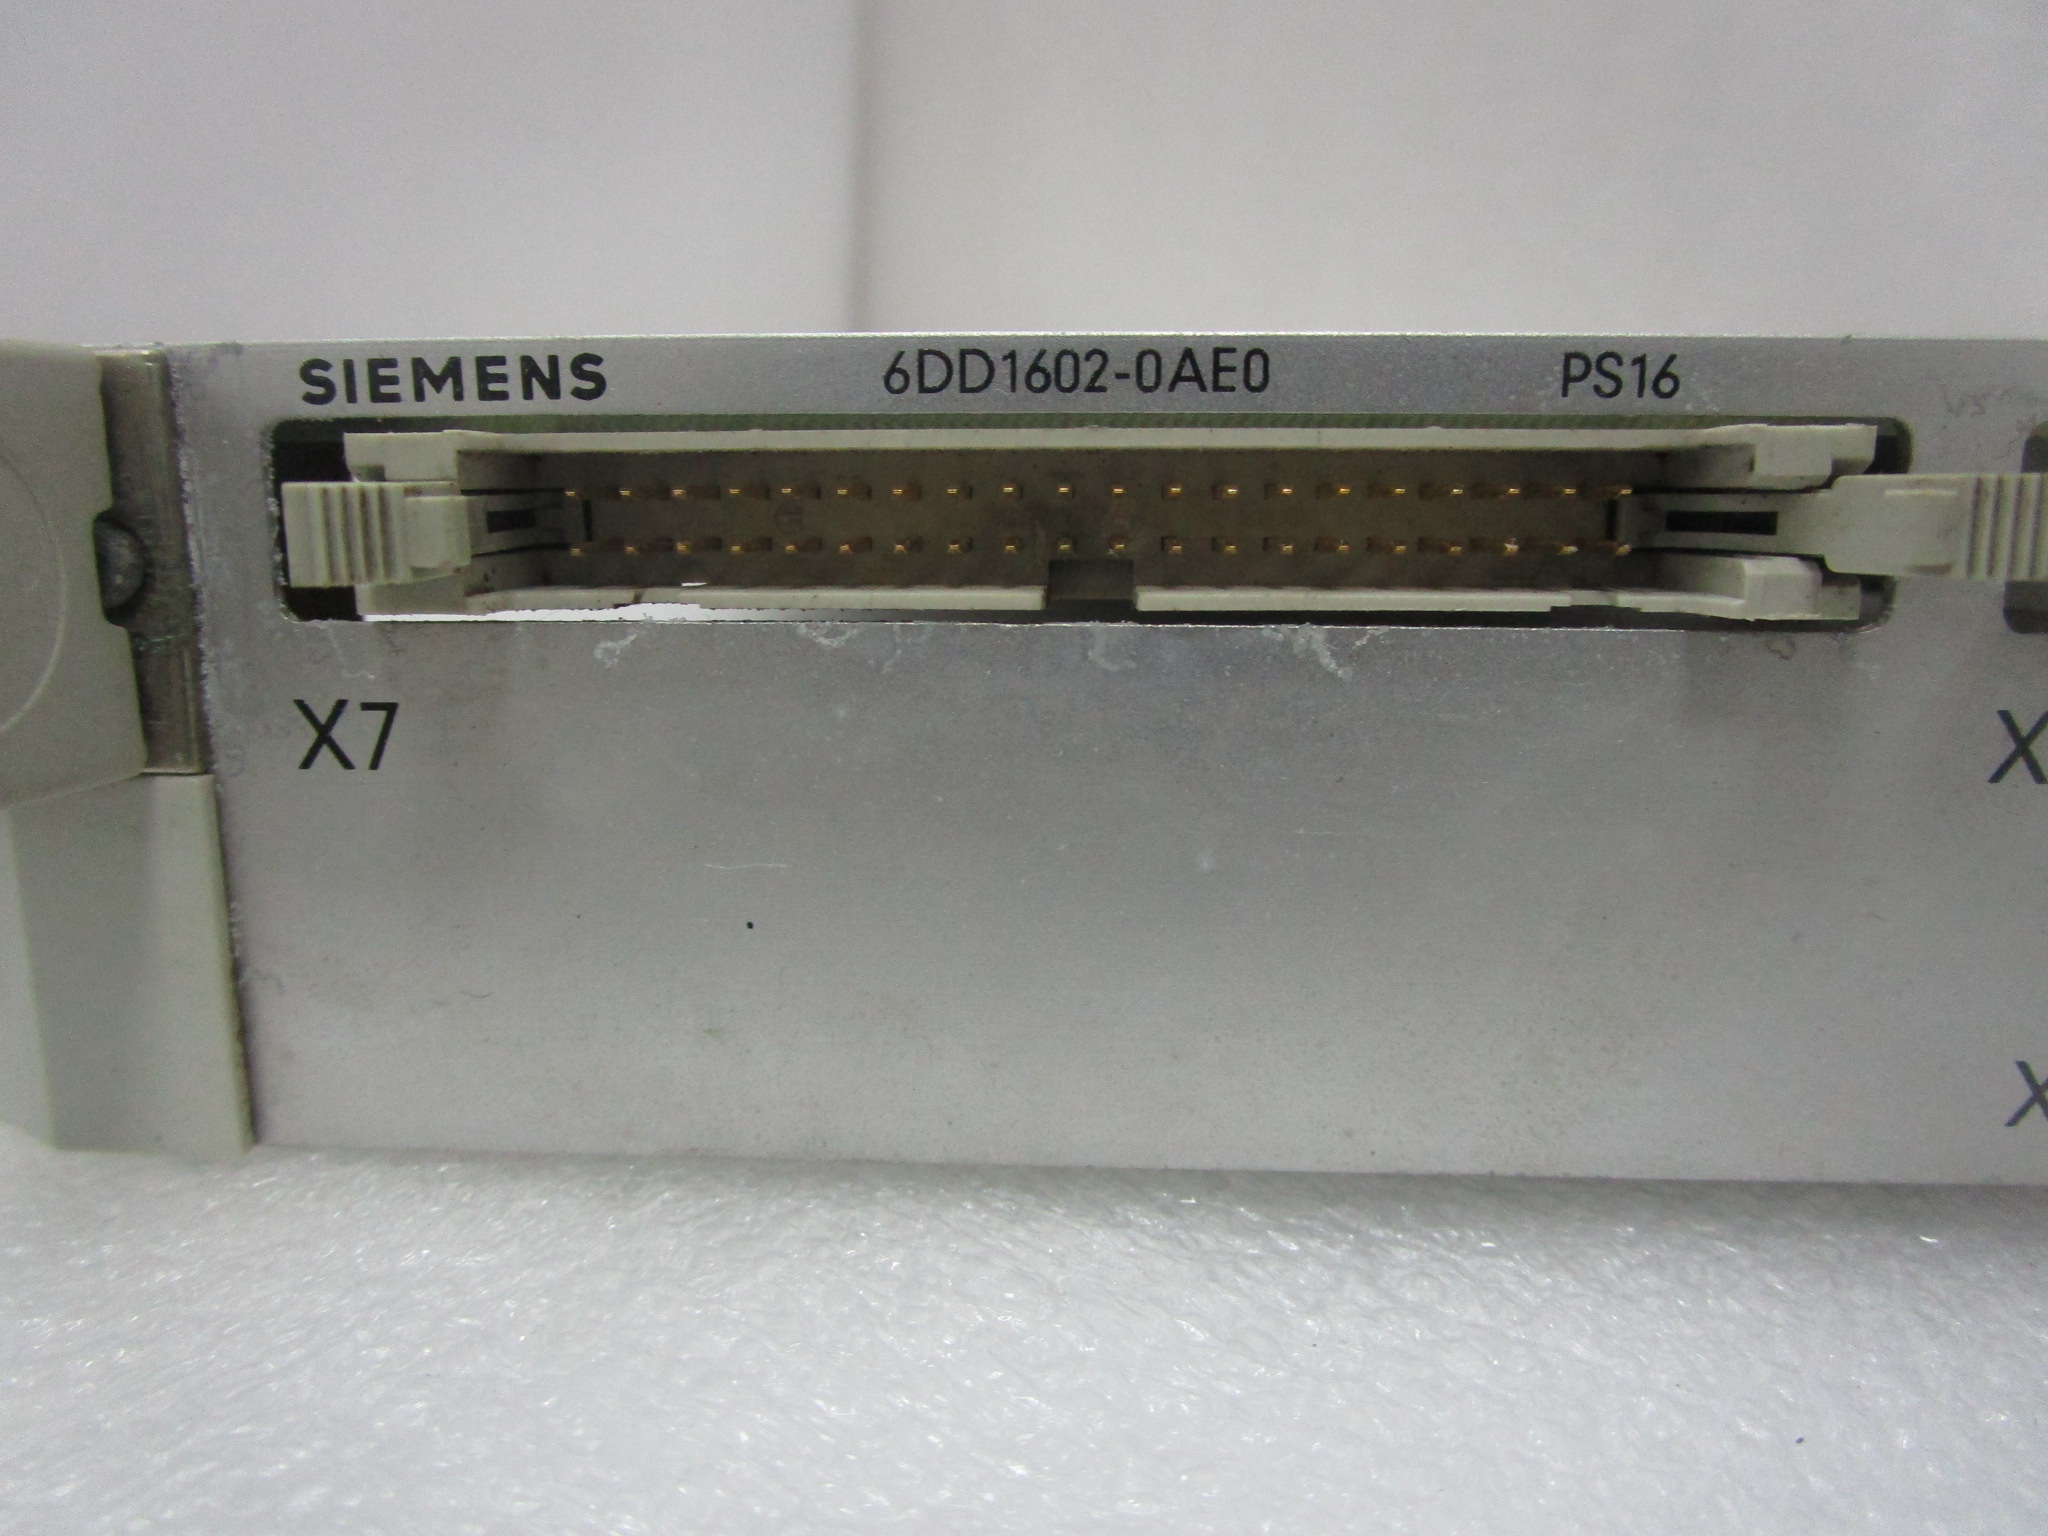 西门子Siemens  6ES5470-4UC2095      现货控制器 